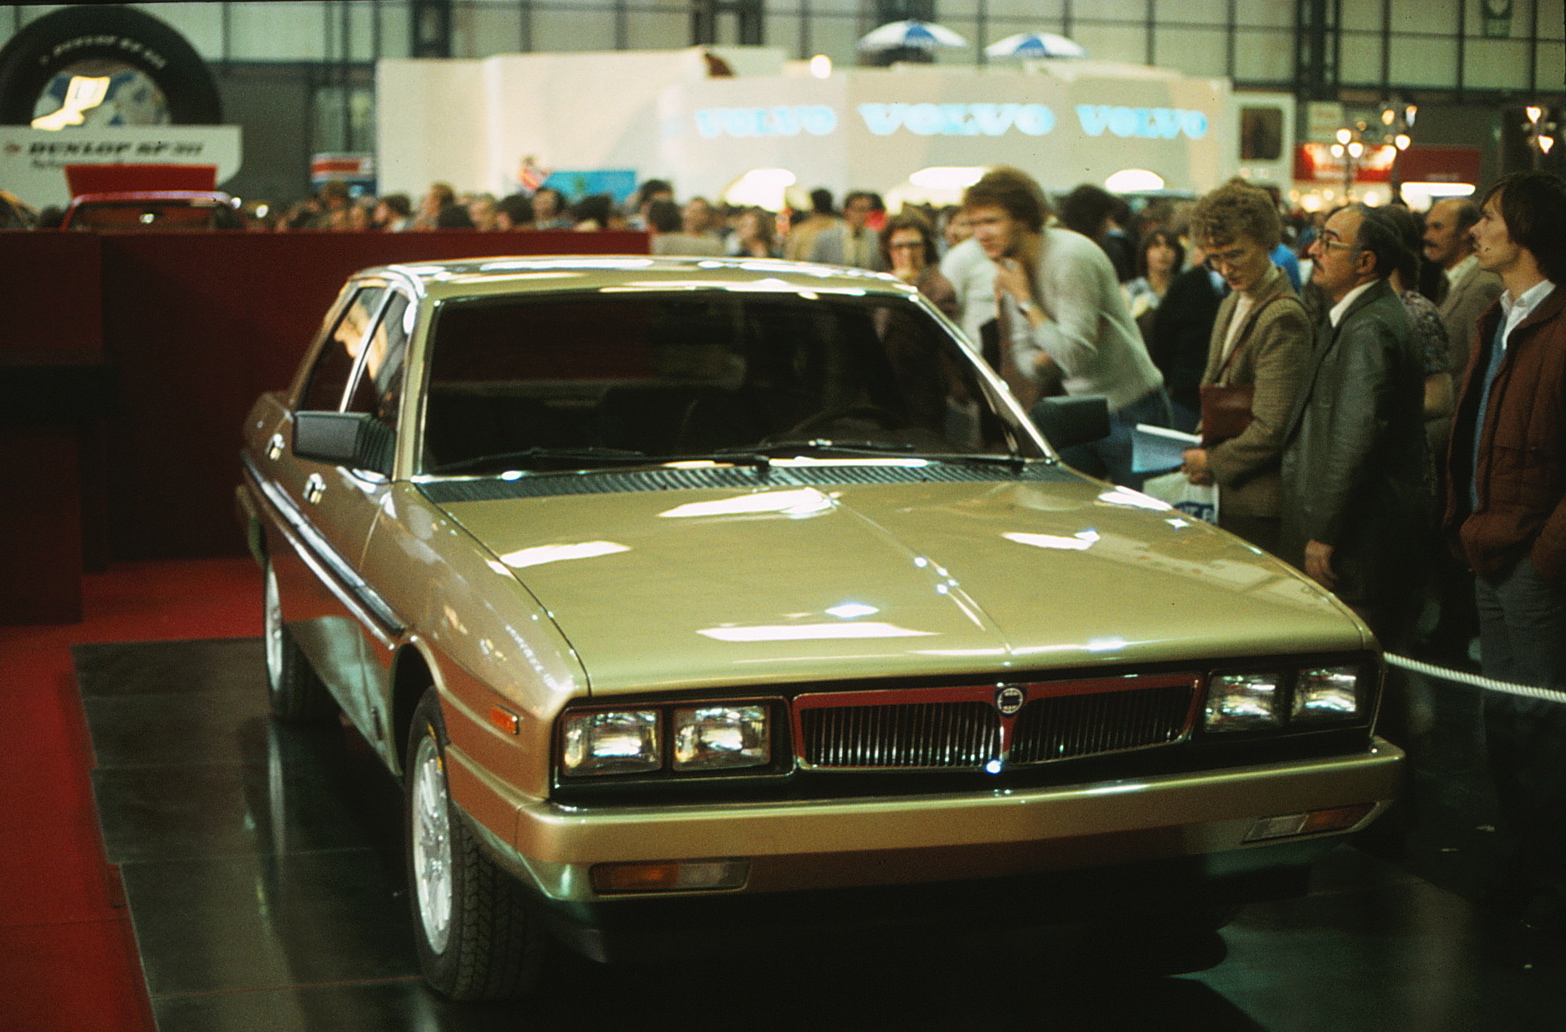 Lancia Gamma Scala (Pininfarina) - British Motor Show. Birmingham, 1980